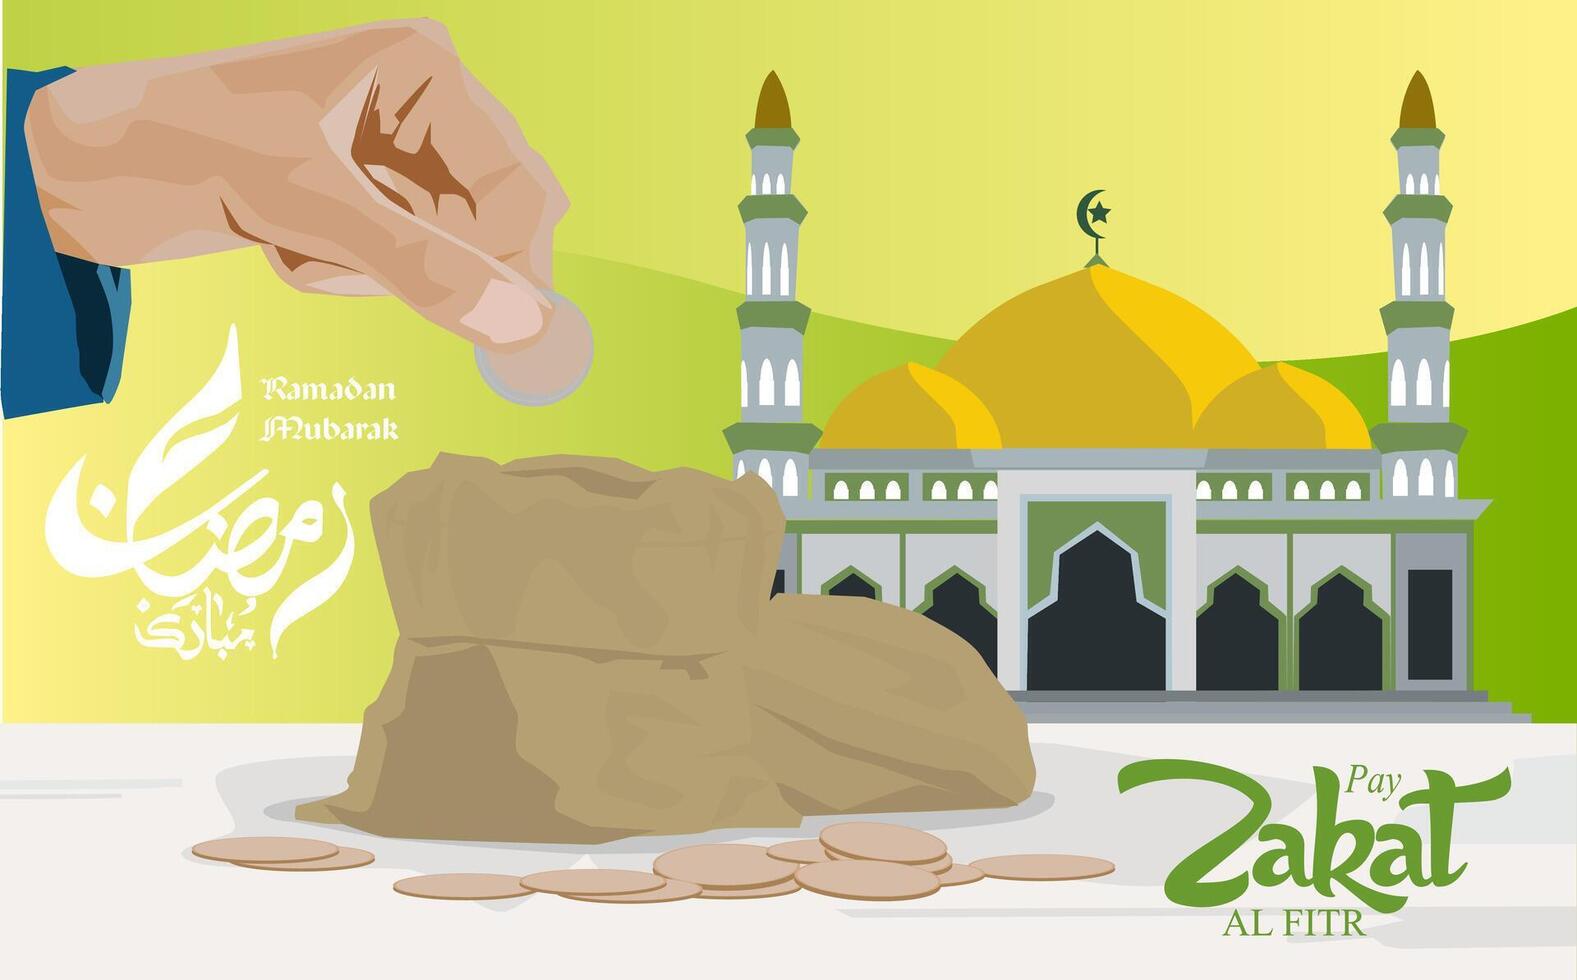 vector hand- Holding munt geld zetten in zak- naar geven zakat al-fitr en moskee Ramadan mubarak kalligrafisch